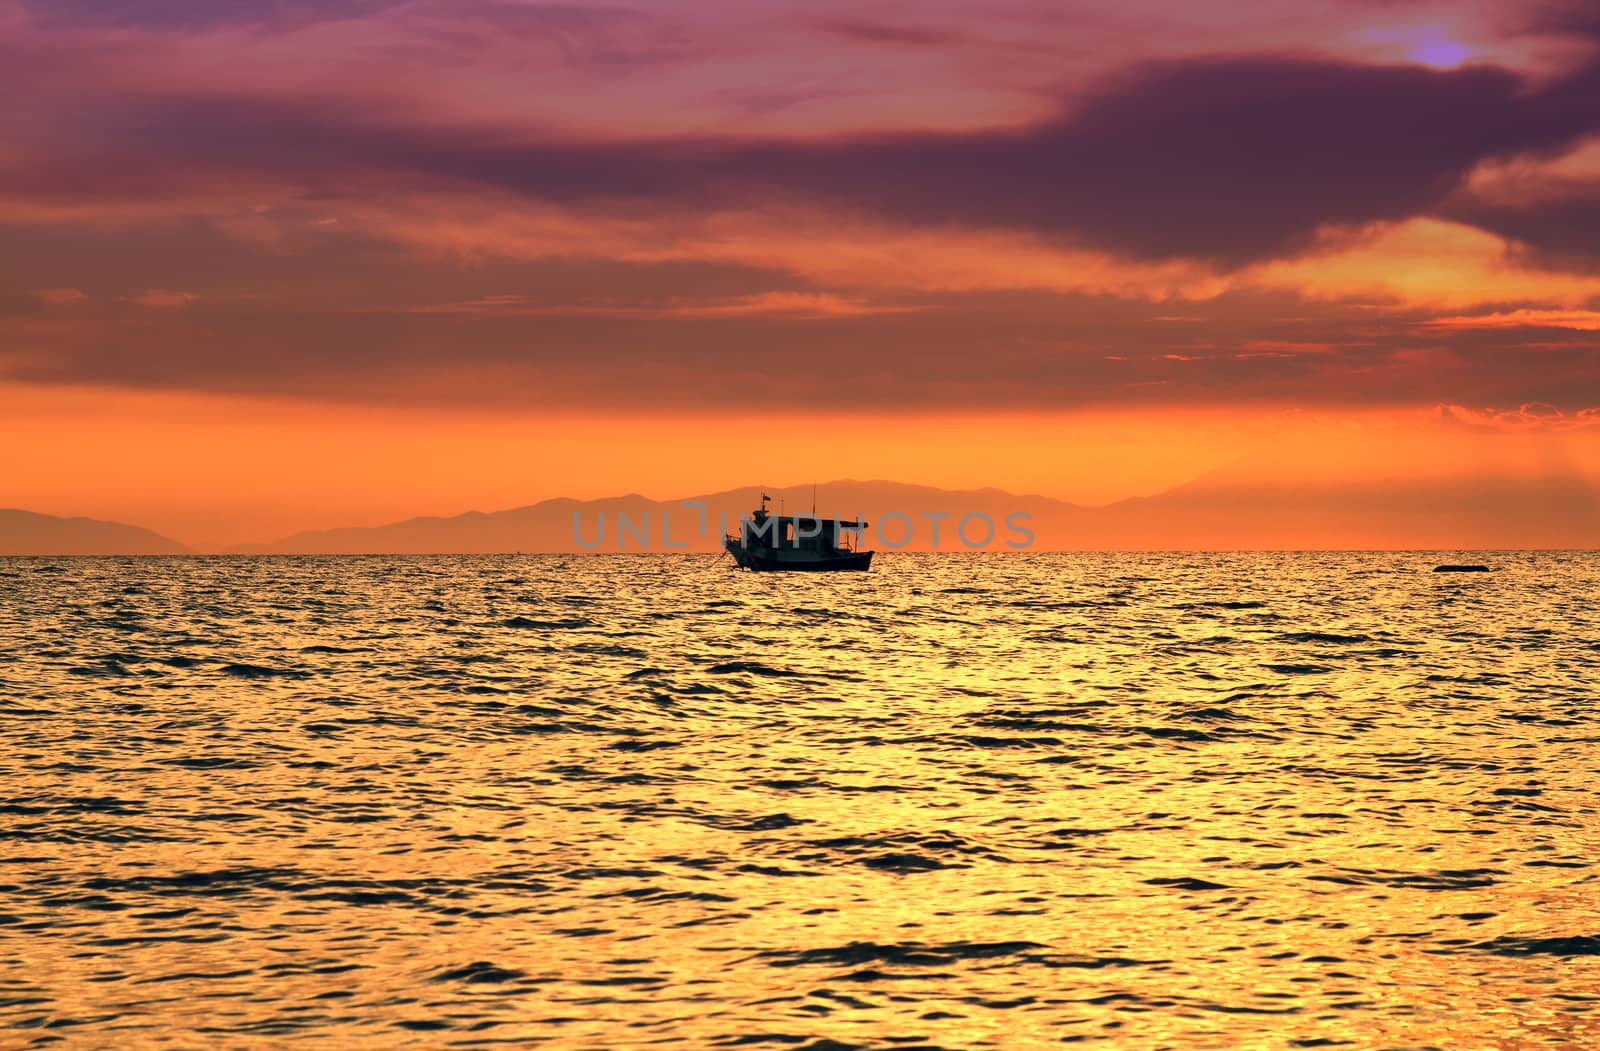 Red purple orange sunset over sea, beautiful cloud space